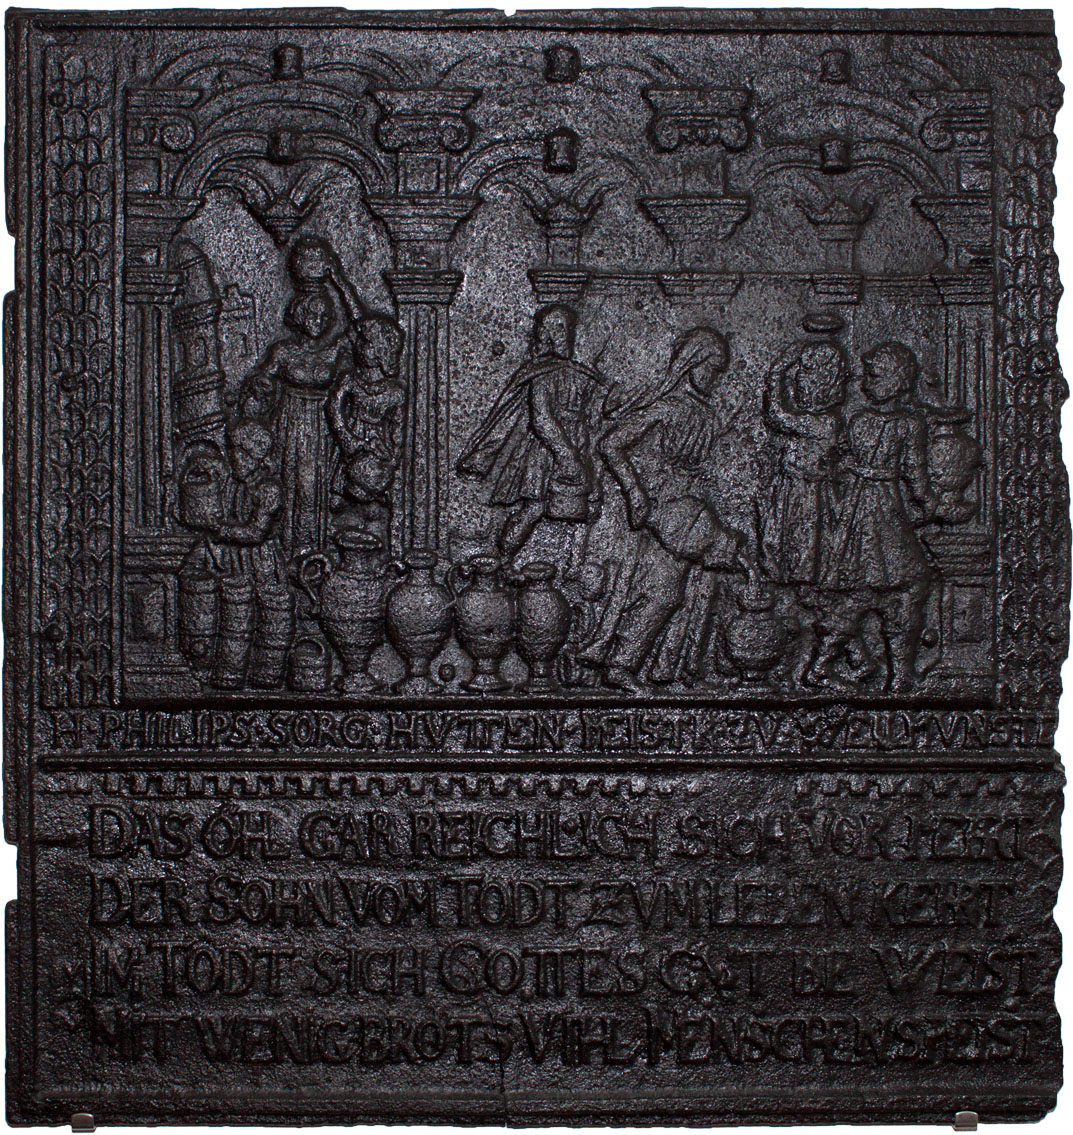 gusseiserne Ofenplatte mit Relief und Inschrift (2) (Weindorf-Museum Horrweiler CC BY-NC-SA)